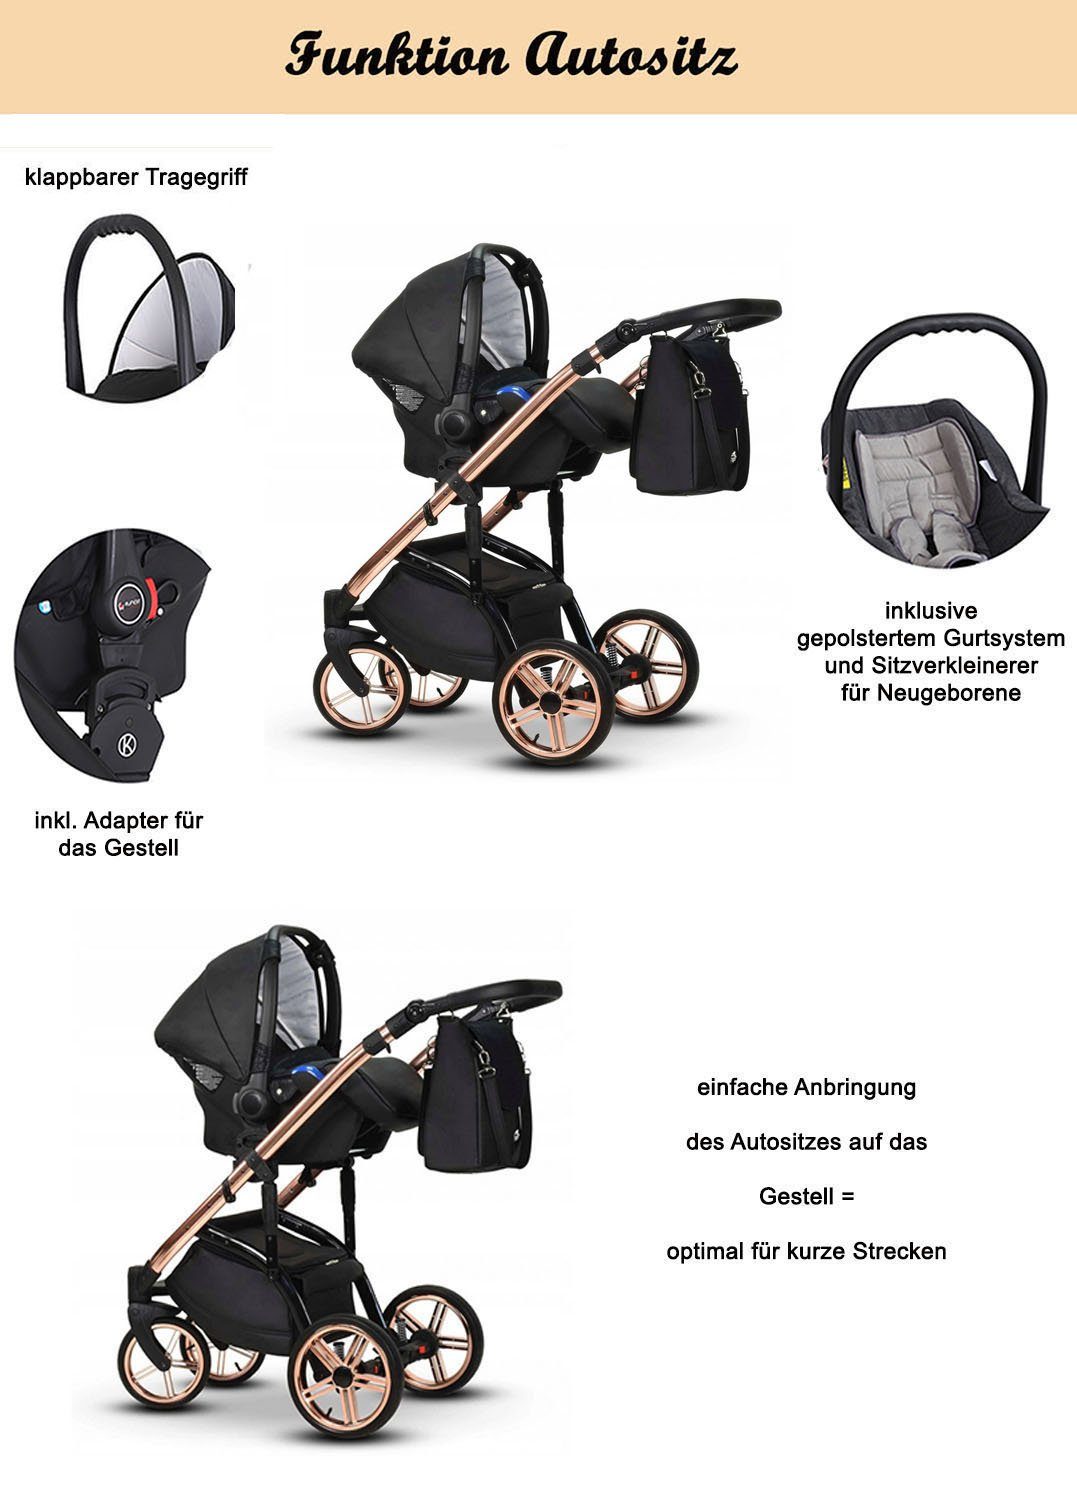 Vip 1 babies-on-wheels - Grün-Gold-Dekor 3 Farben Kinderwagen-Set Lux Kombi-Kinderwagen 16 Teile 12 - in in